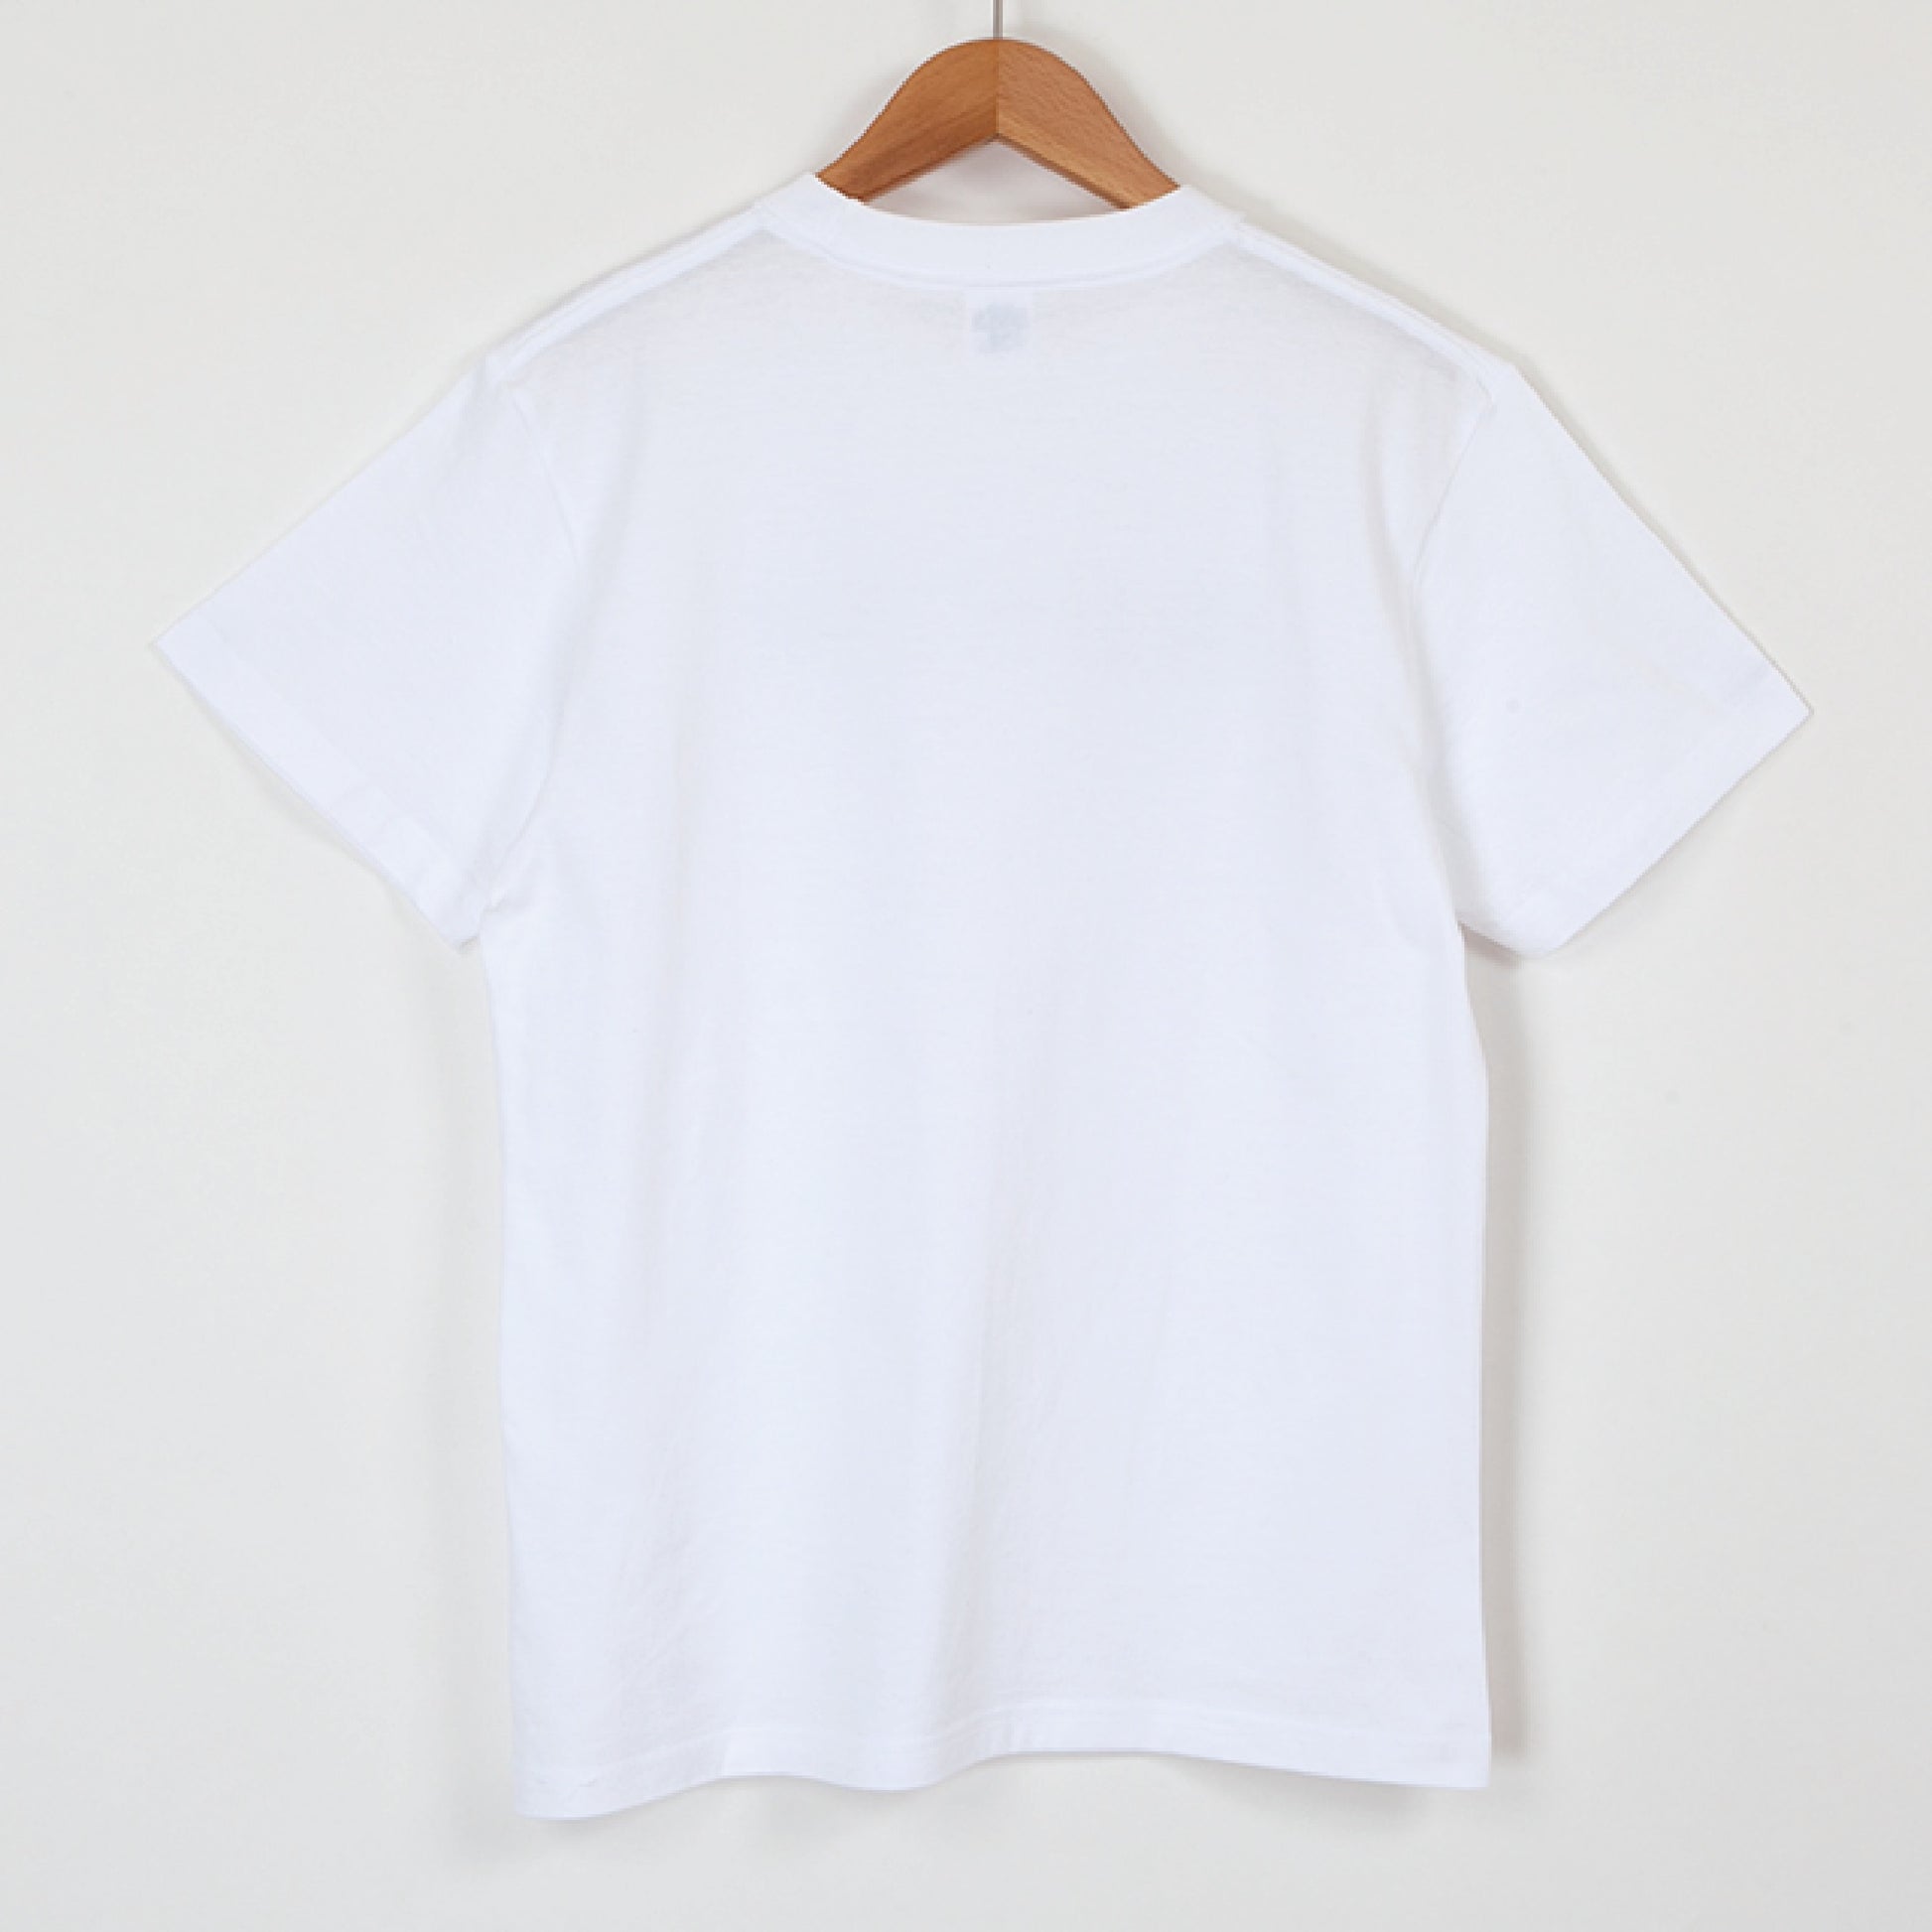 国立天文台 NAOJ漢字 ロゴマーク WIC. Tシャツ ホワイト S 01